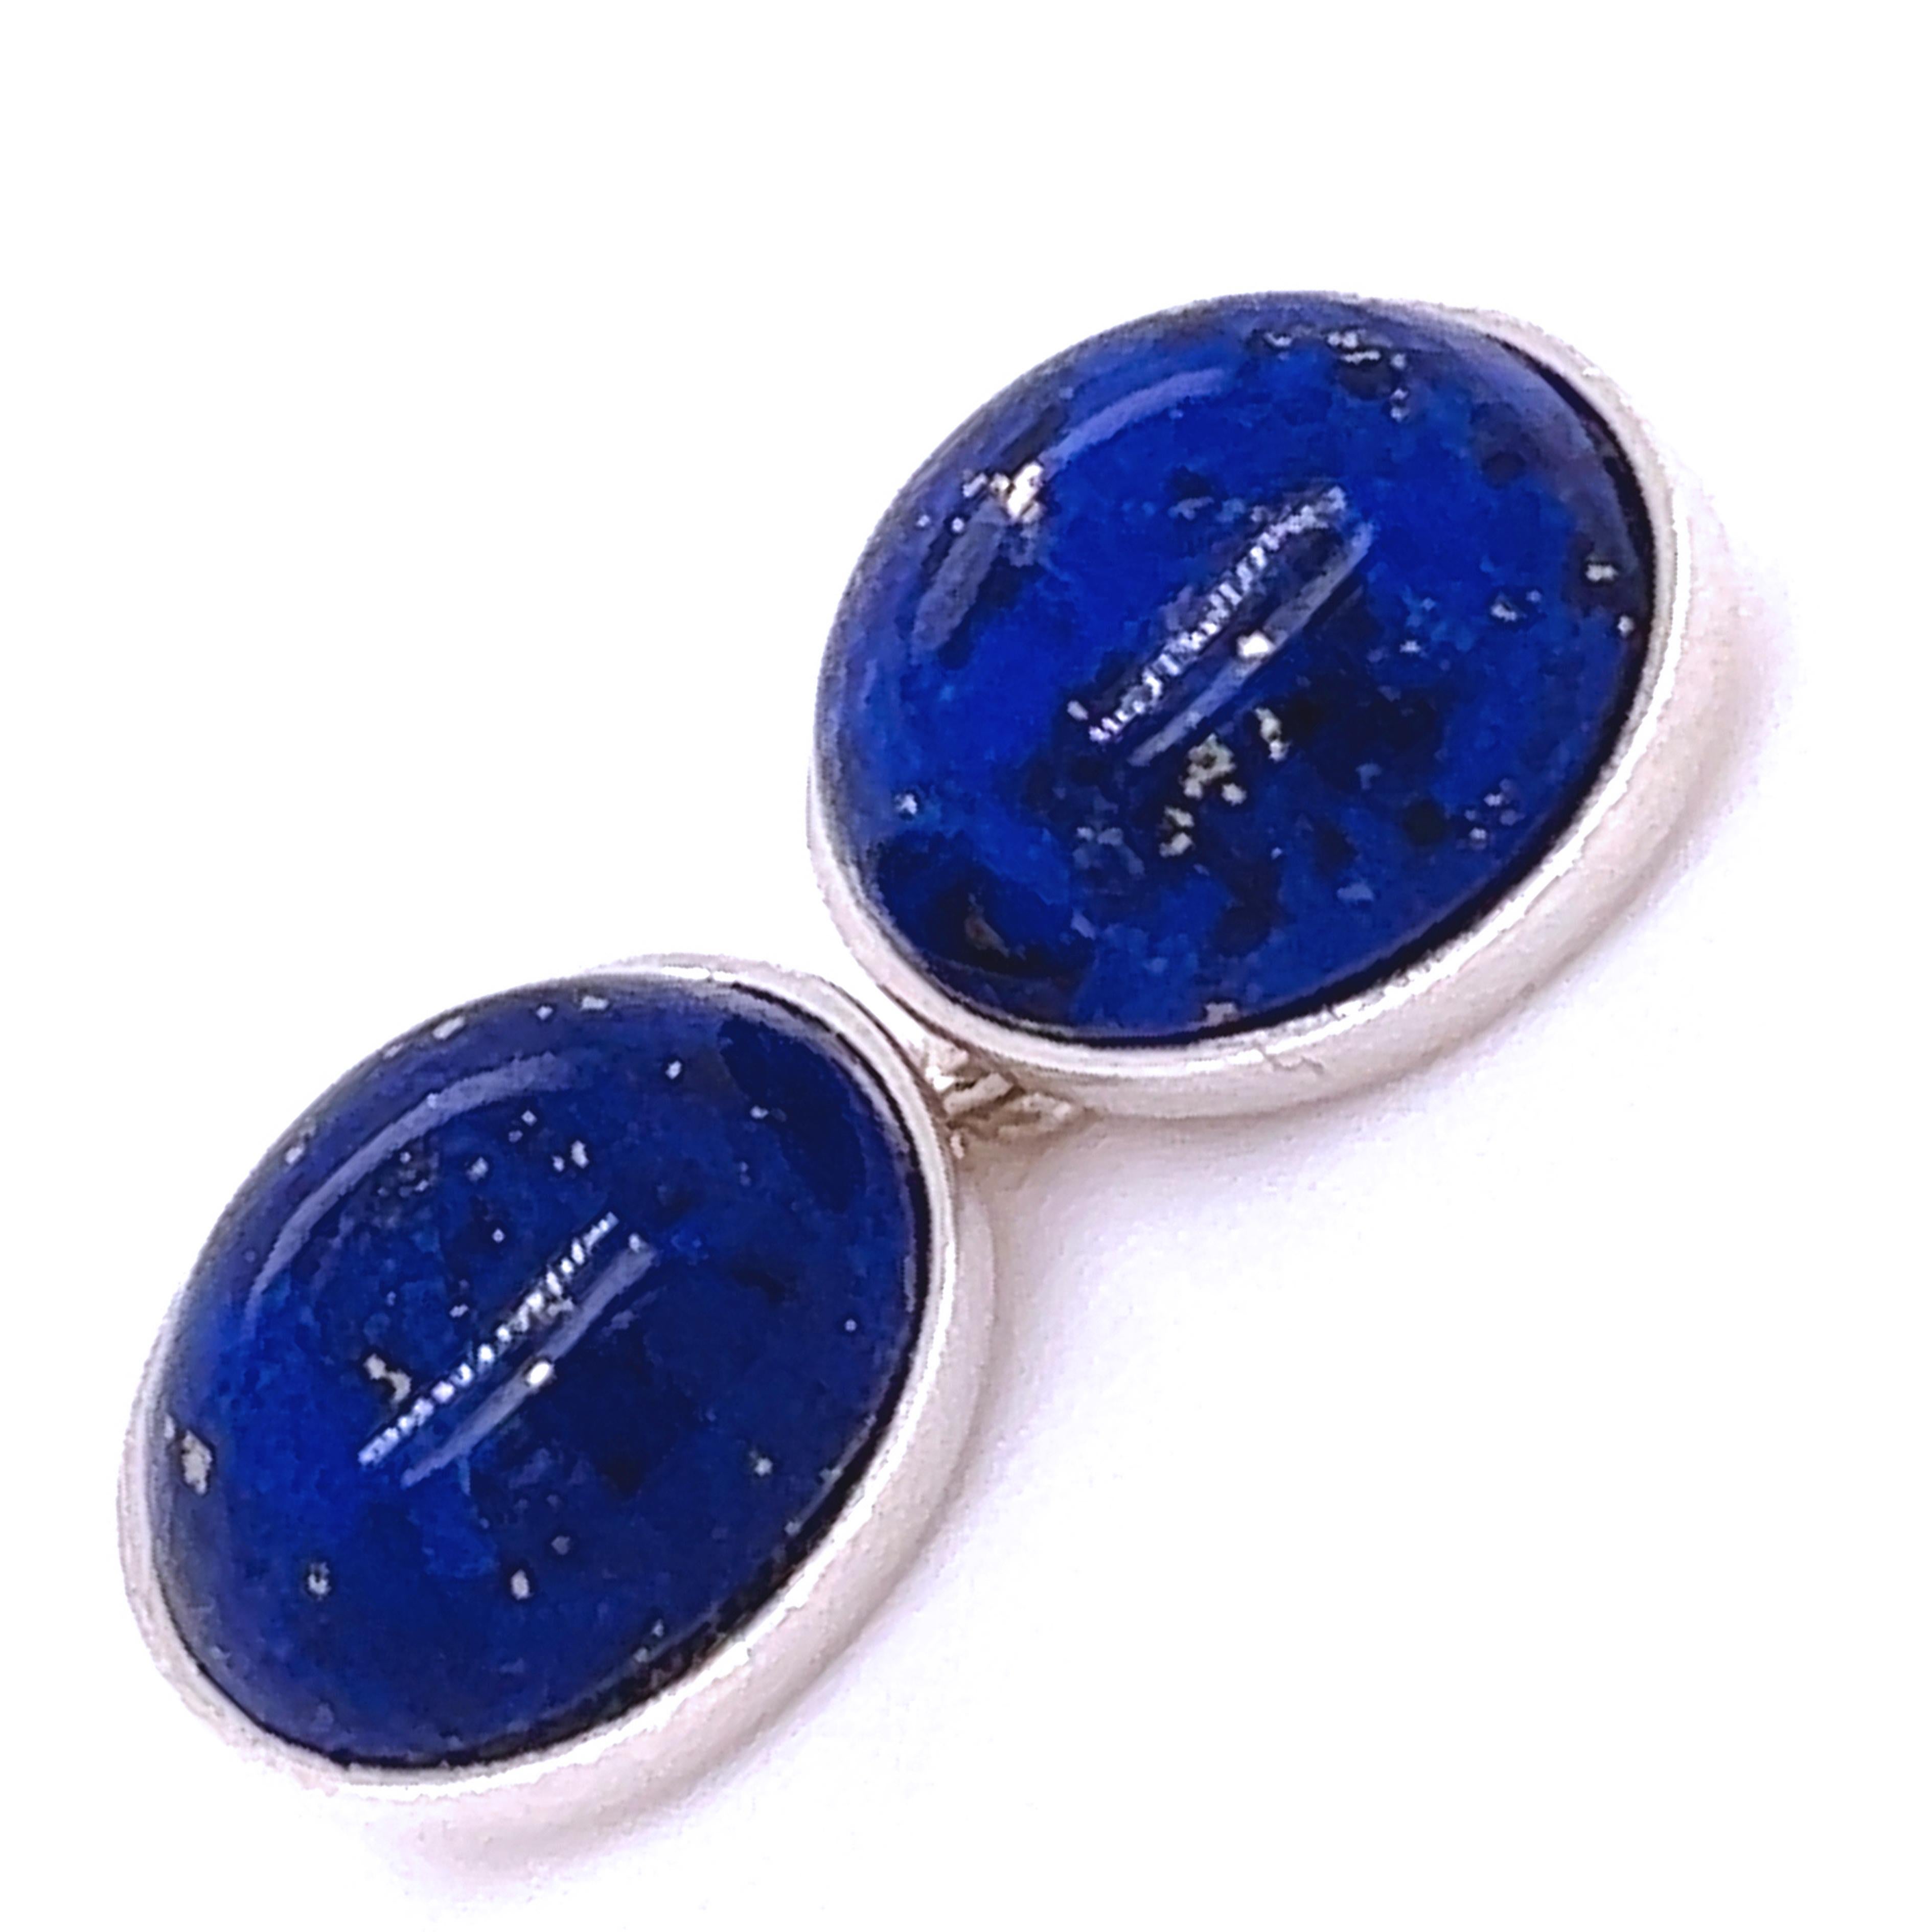 Chics et intemporels, les boutons de manchette en argent sterling incrustés à la main de cabochons de lapis-lazuli naturels de forme ovale.
Dans notre élégant étui et pochette en cuir daim tabac.

